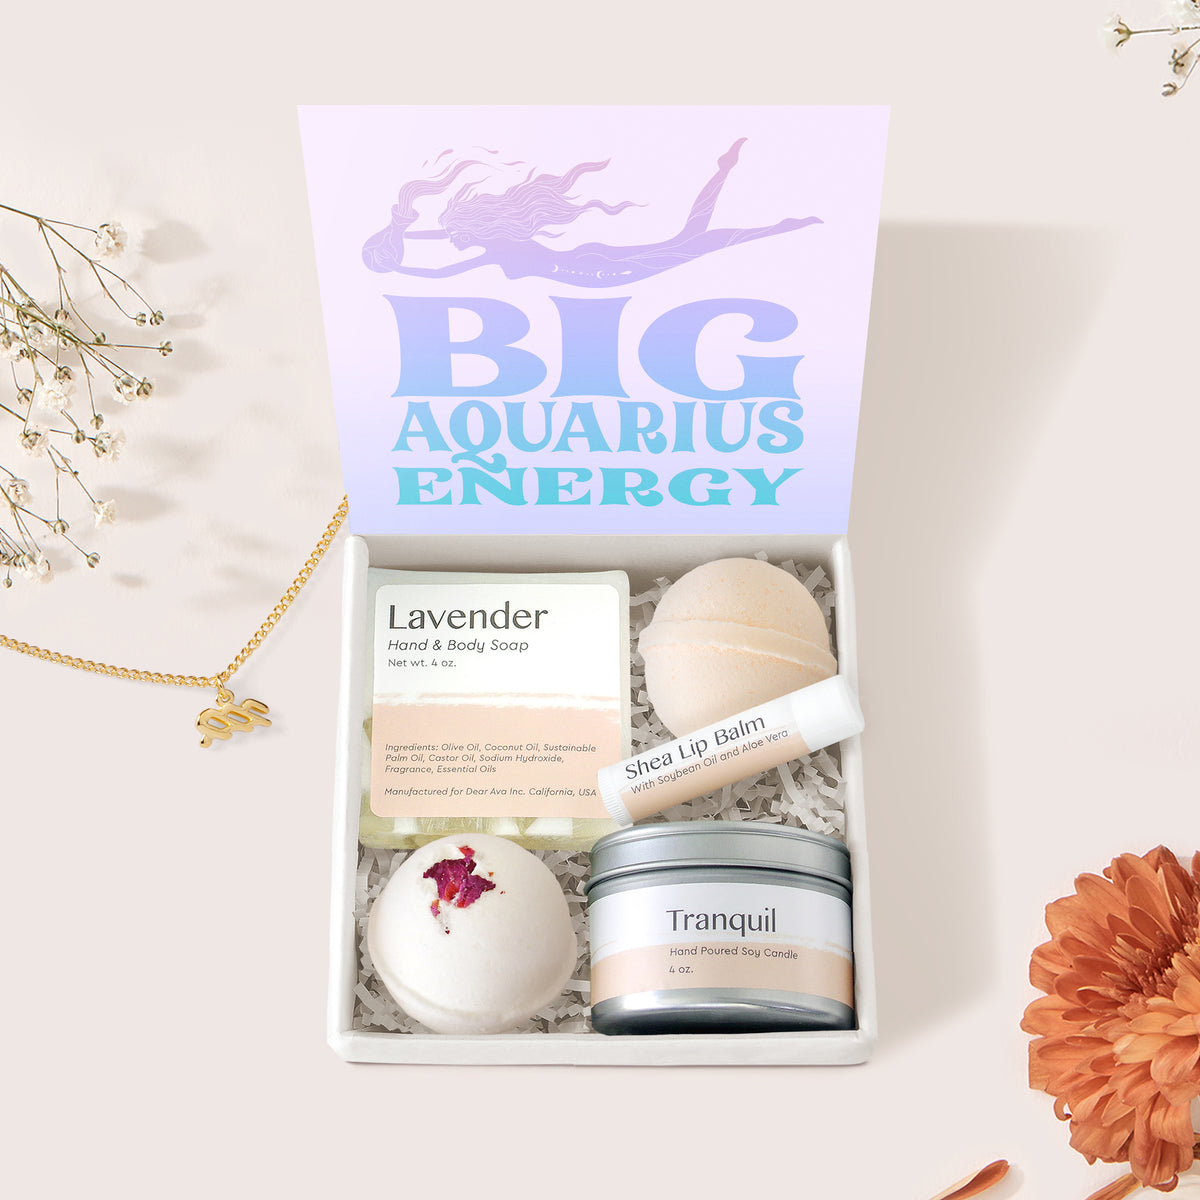 Big Aquarius Energy Zodiac Gift Box Set